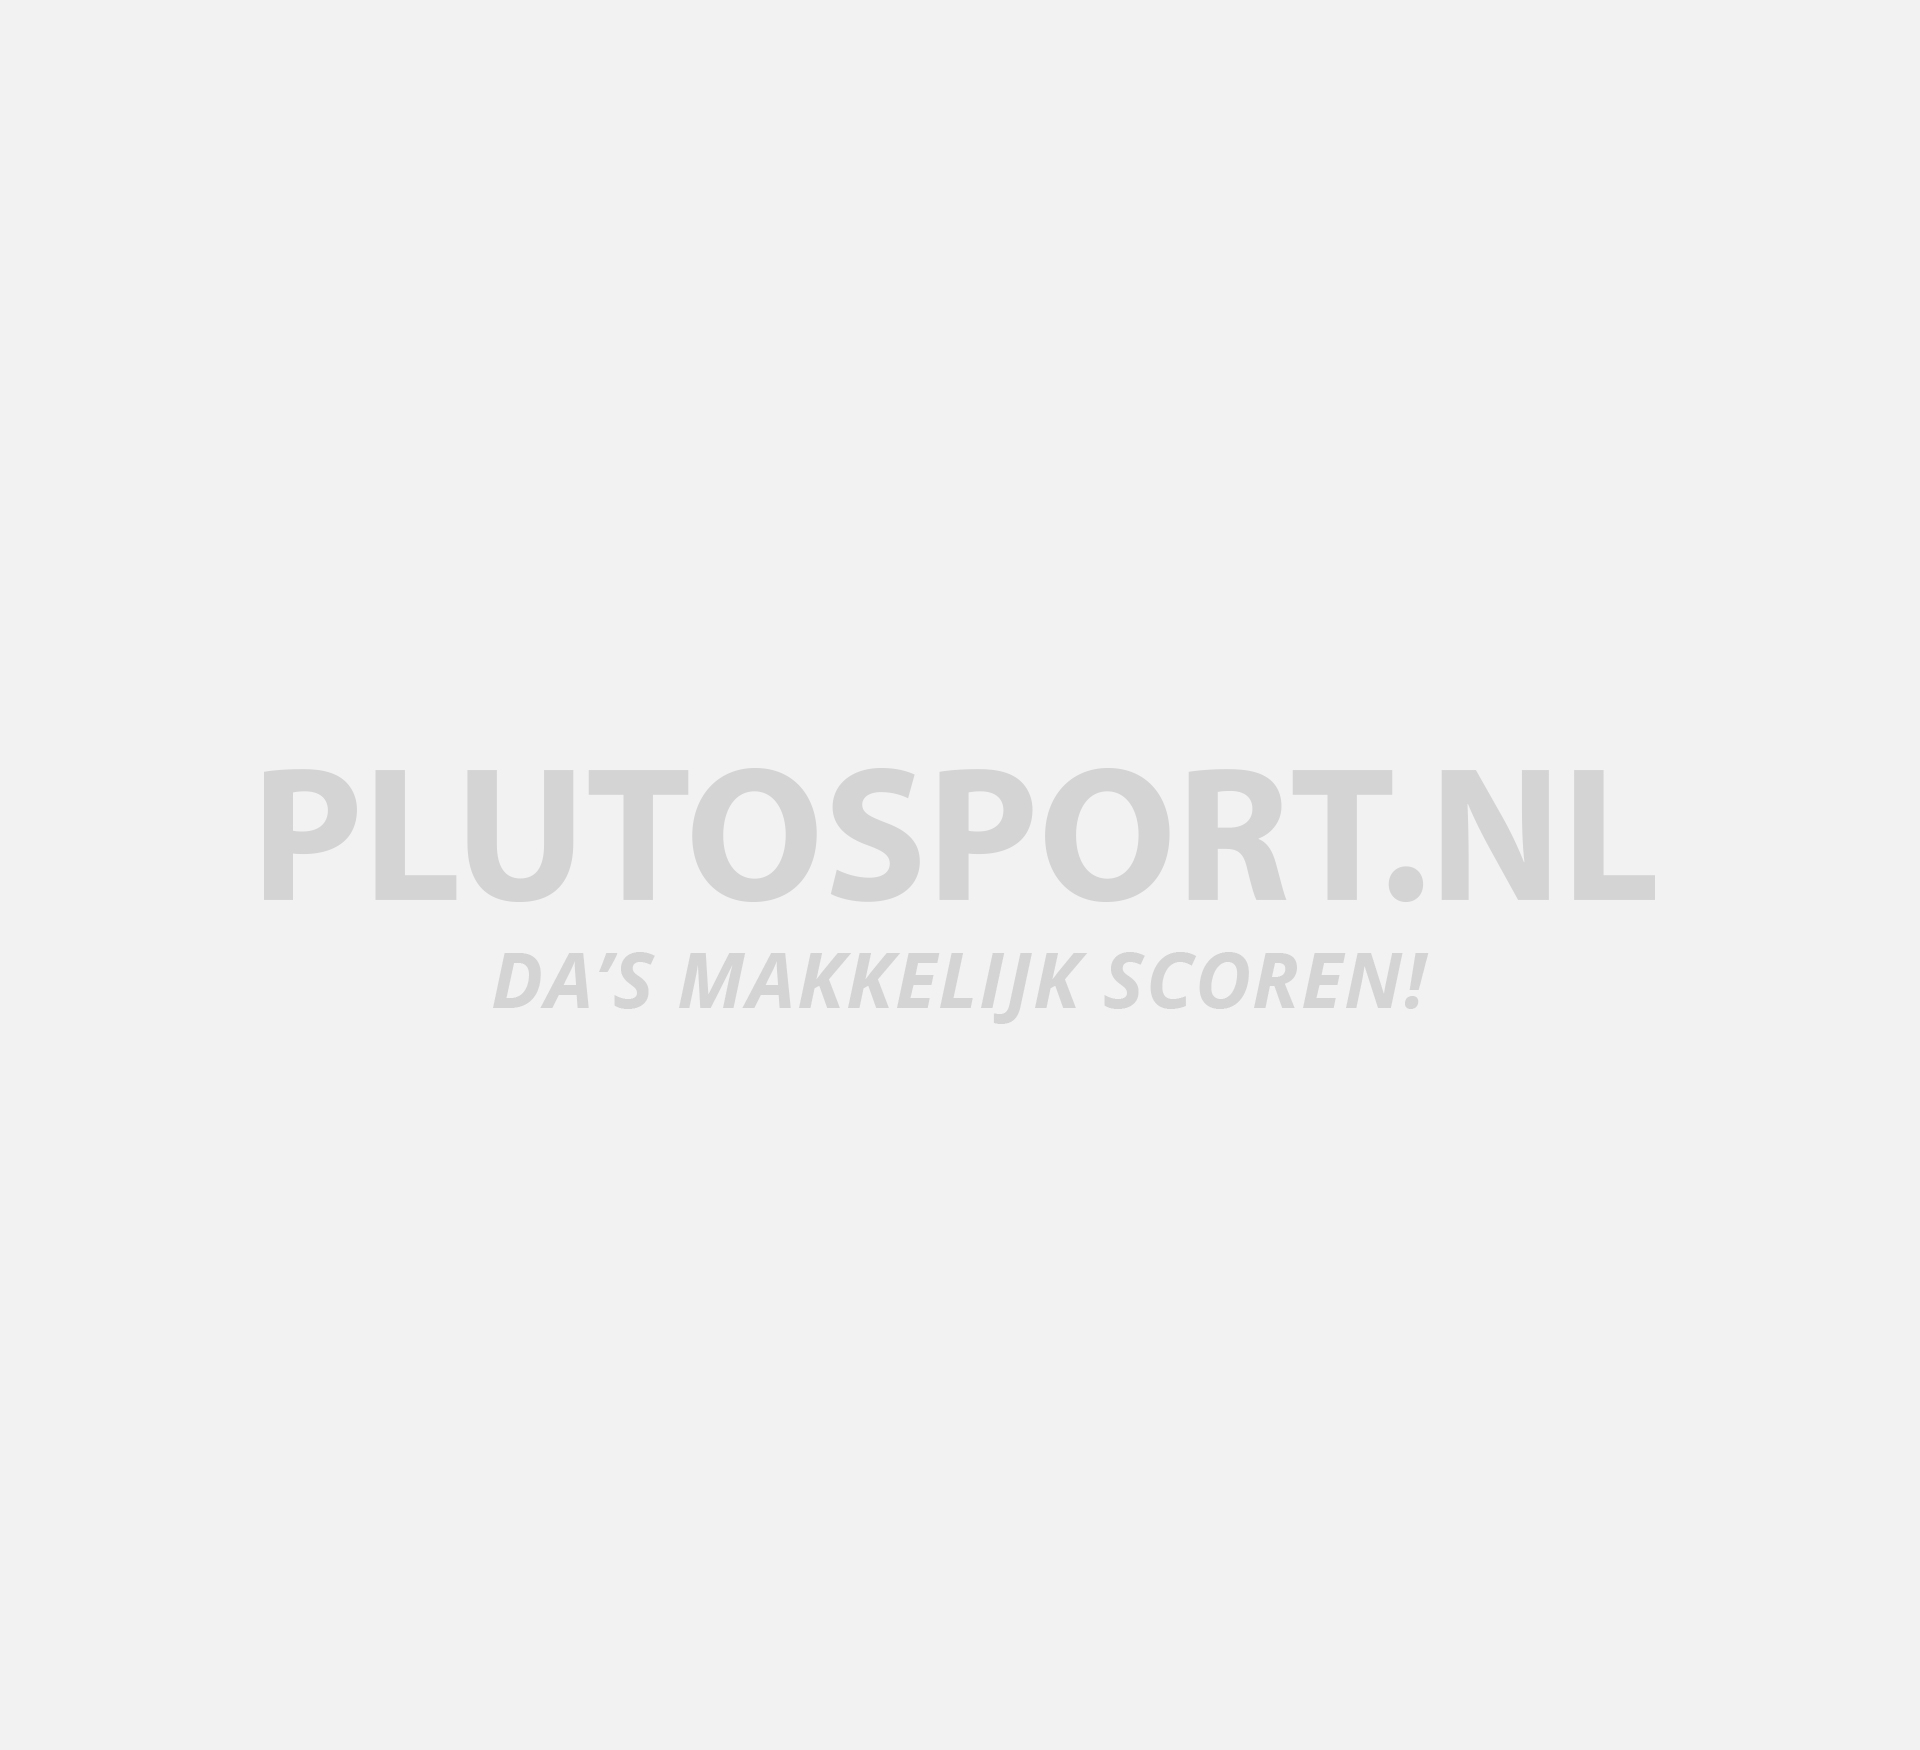 Luske Vandret målbar Tommy Hilfiger Jeans-Flag Shirt Heren | Plutosport